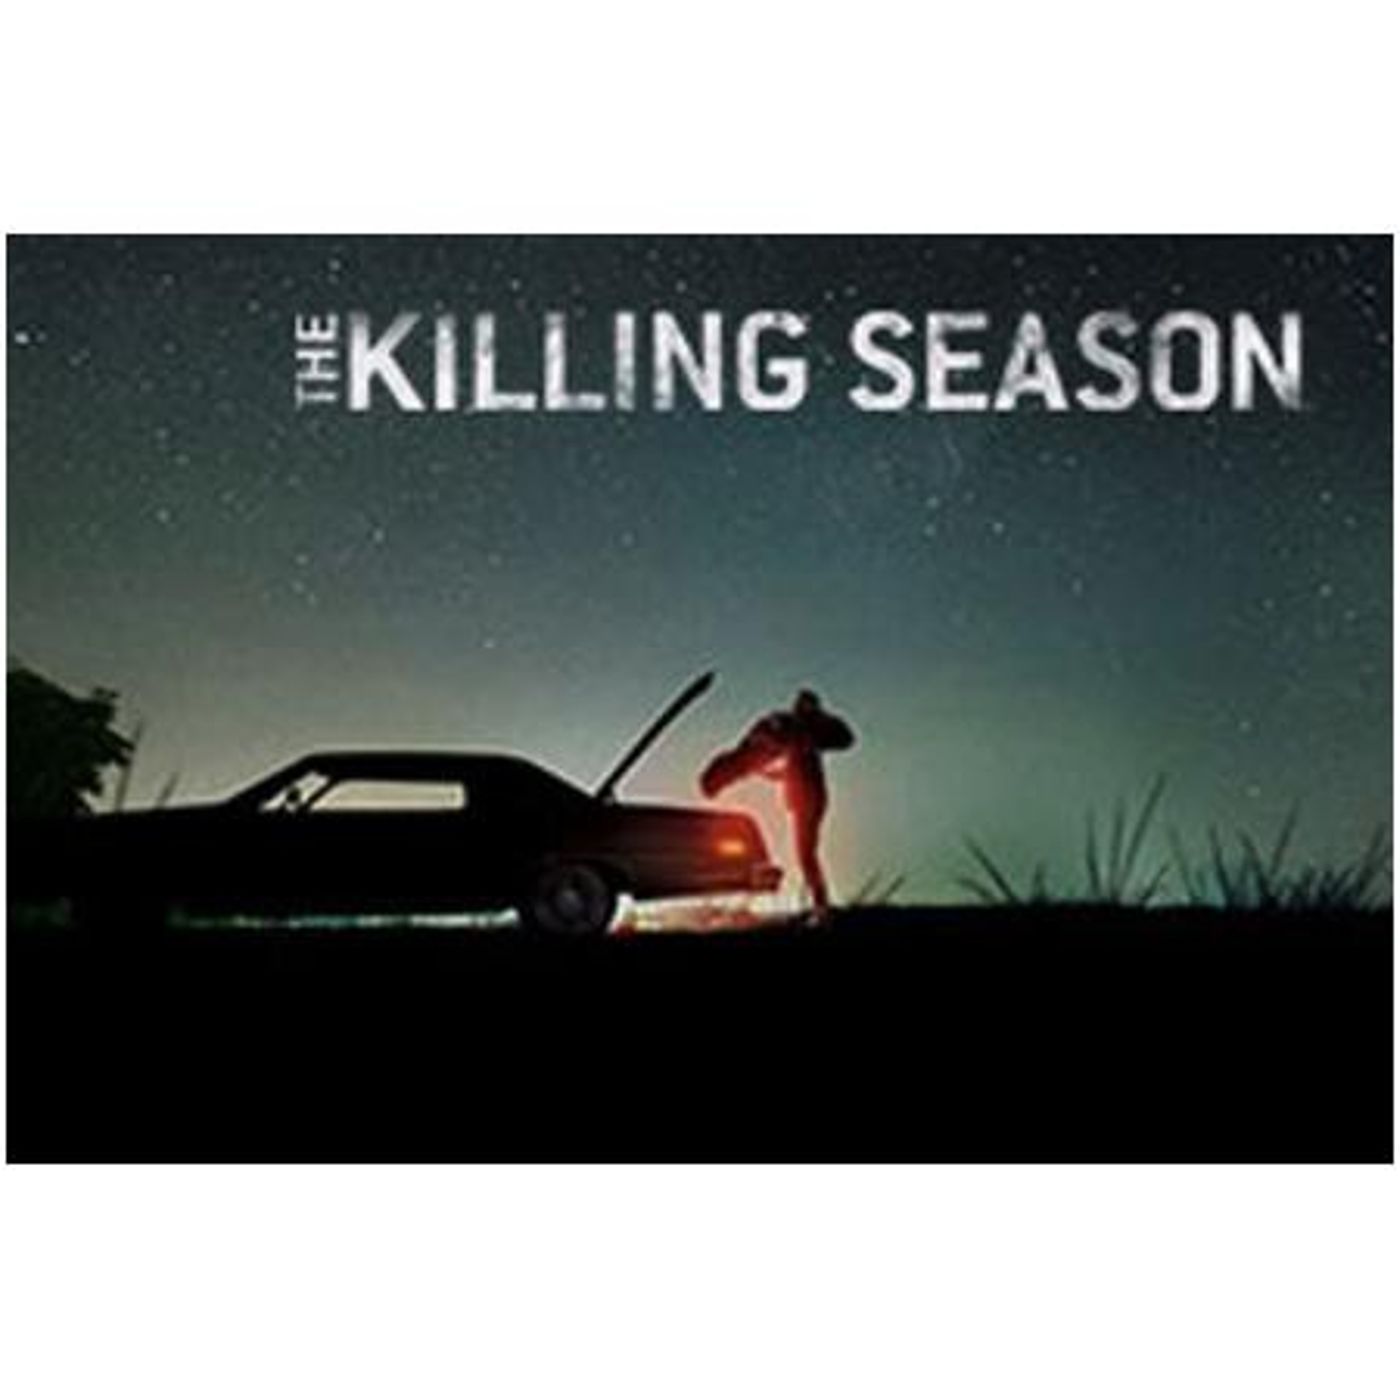 THE KILLING SEASON-Joshua Zeman and Rachel Mills